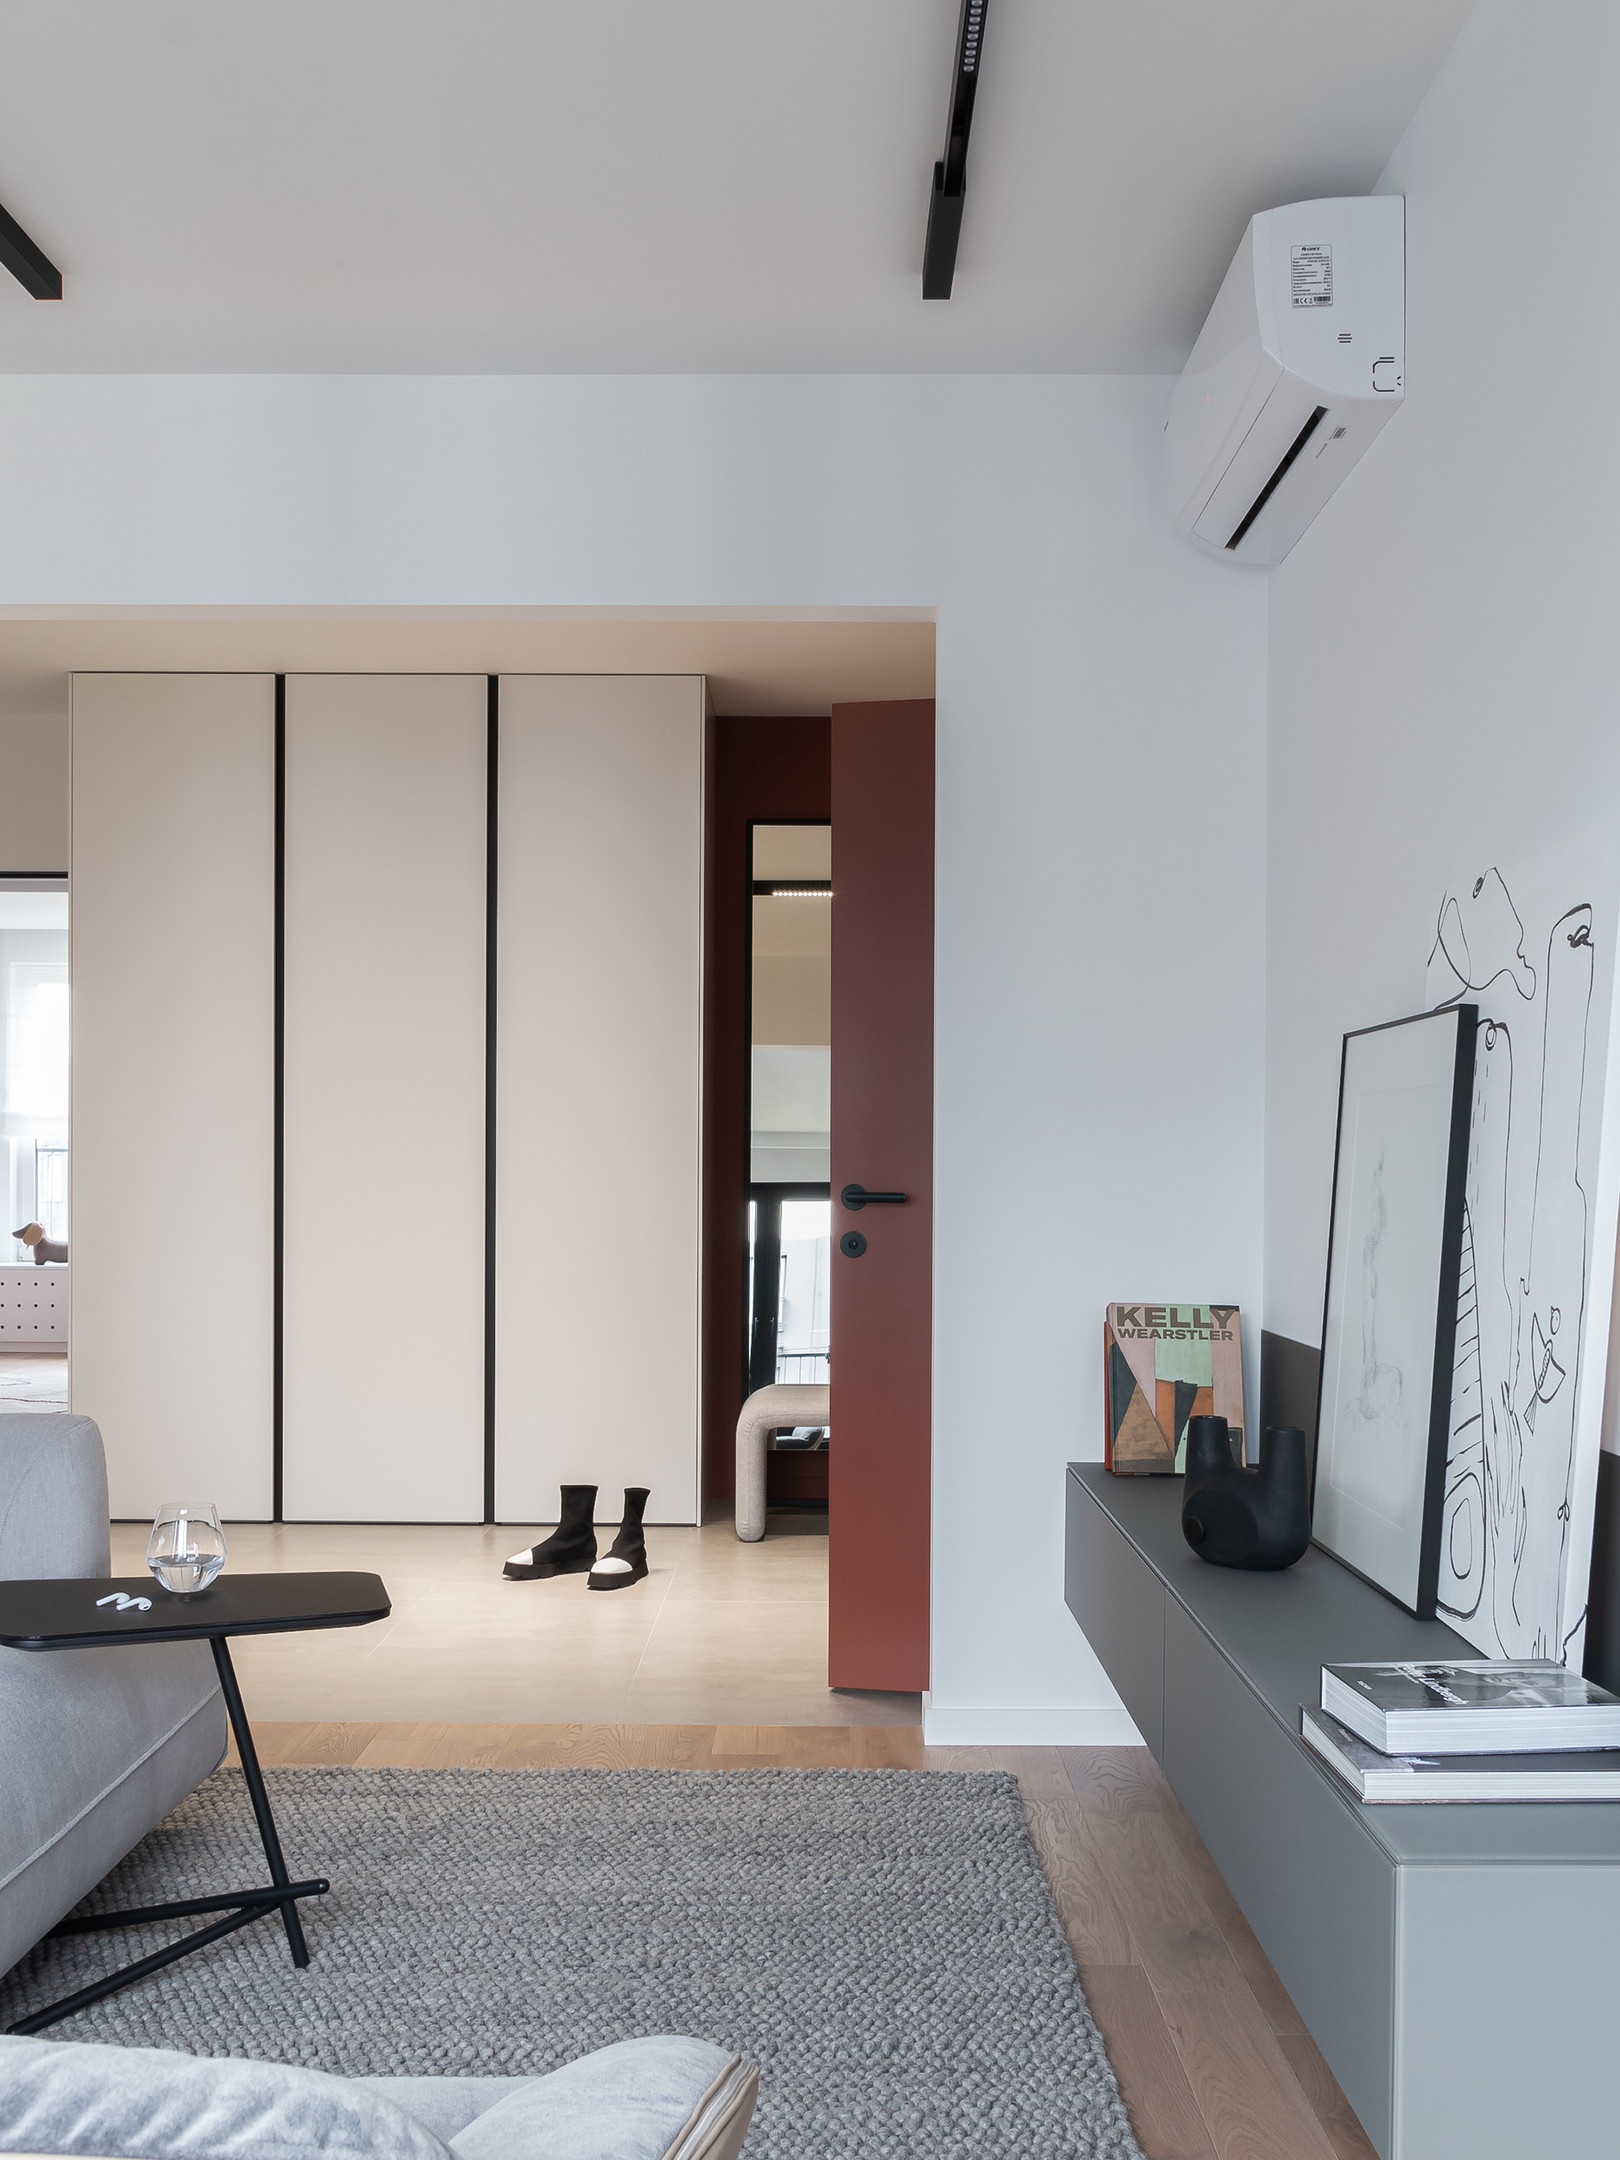 Lối vào căn hộ nhìn từ khu vực phòng khách với hệ thống tủ lưu trữ cao kịch trần giúp tối ưu hóa chiều cao trần, kết hợp tấm gương lớn giúp phản chiếu ánh sáng từ ô cửa lớn.